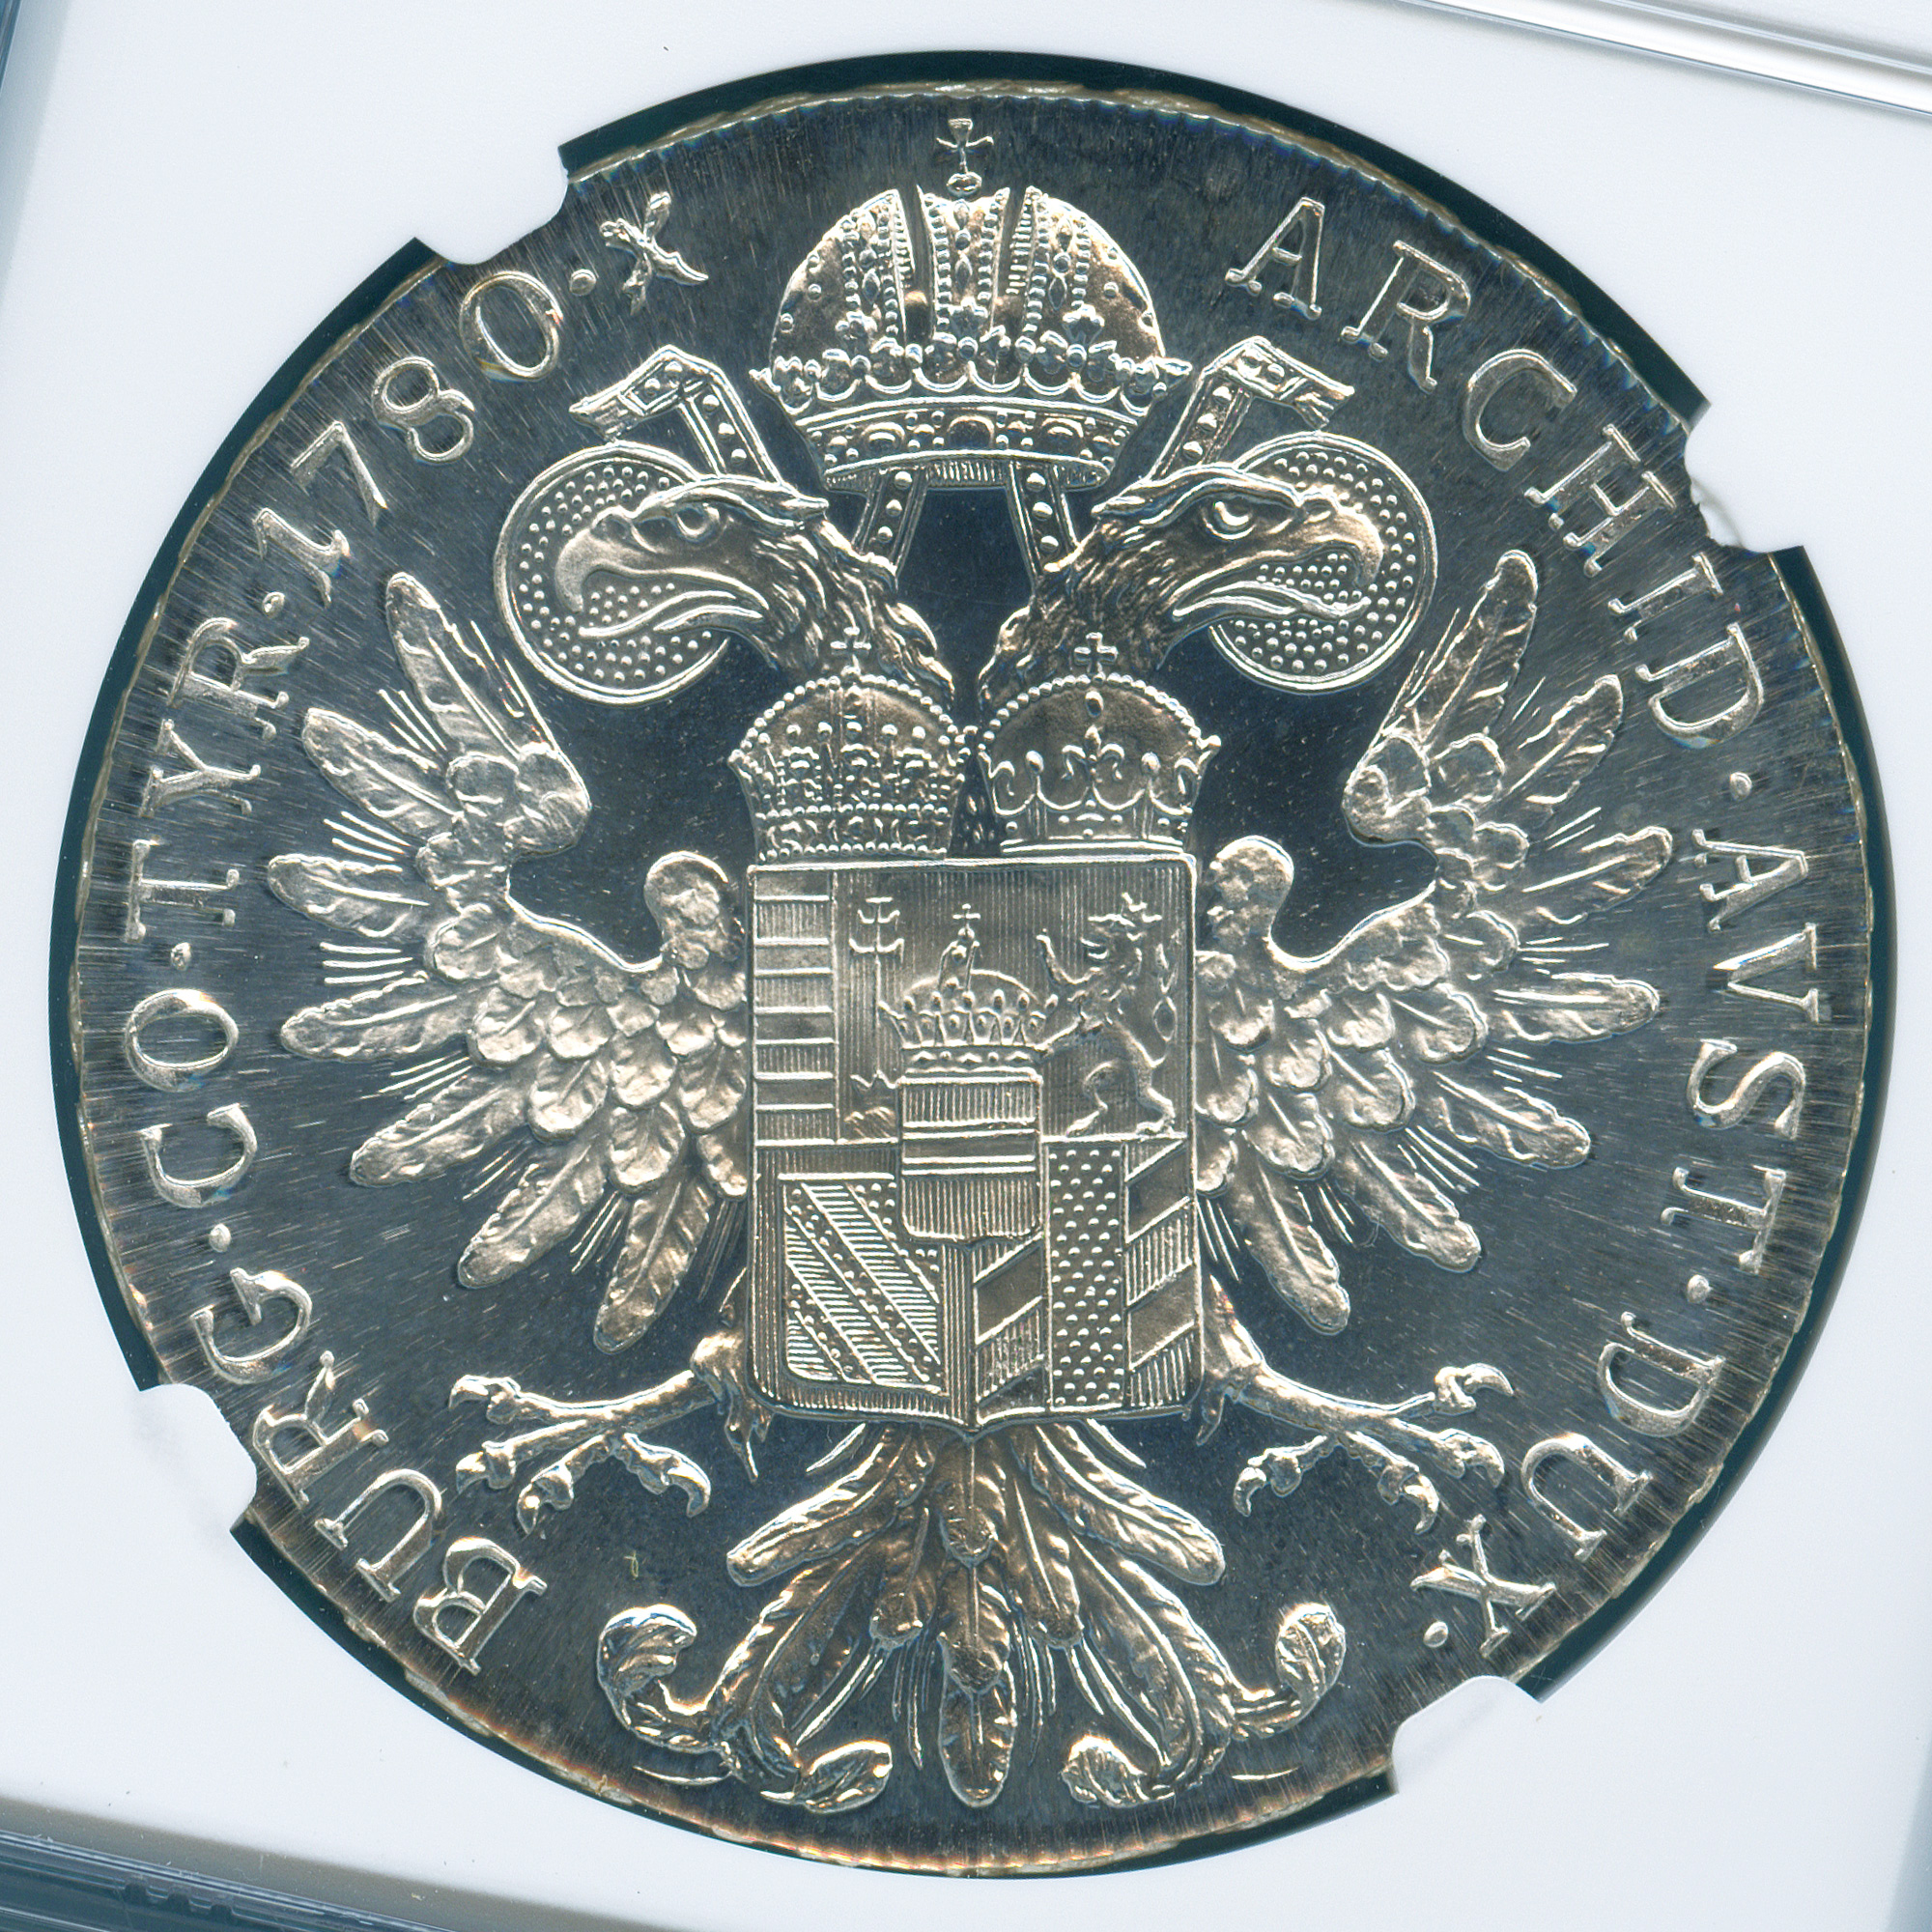 全コイン :: アンティーク :: オーストリア ターラー銀貨 マリア・テレジア モダン・リストライク (1780) 最高鑑定 PF69UC  MODERN RESTRIKE - アンティークコイン